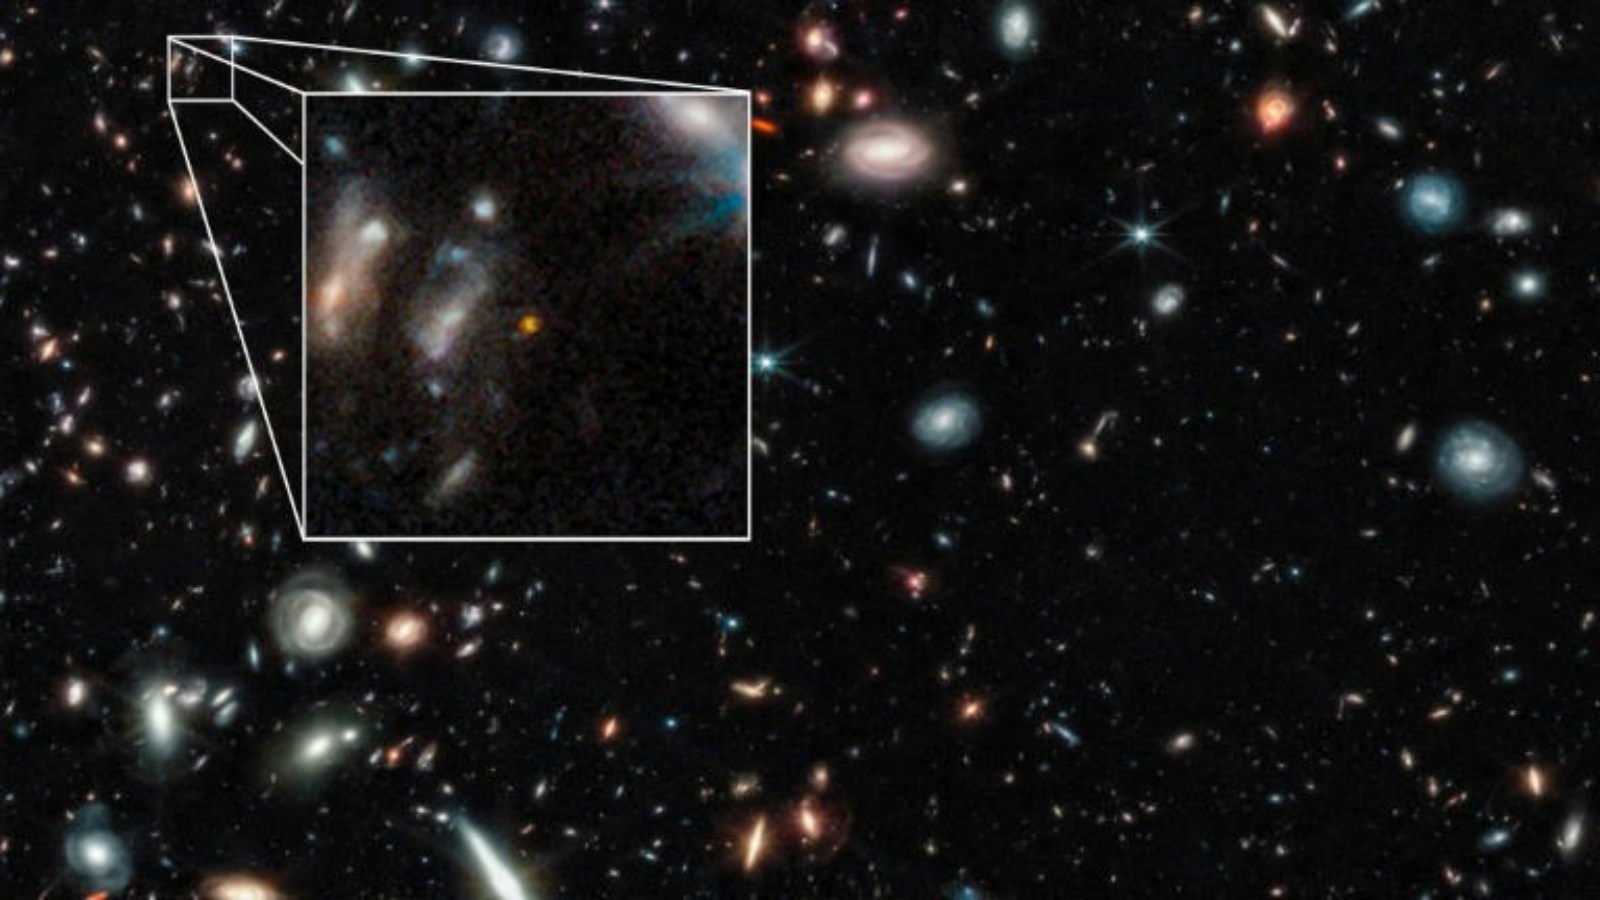 صورة التقطها تلسكوب جيمس ويب الفضائي تظهر لقطة مقرّبة لمجرة كانت موجودة قبل 350 مليون سنة من الانفجار العظيم